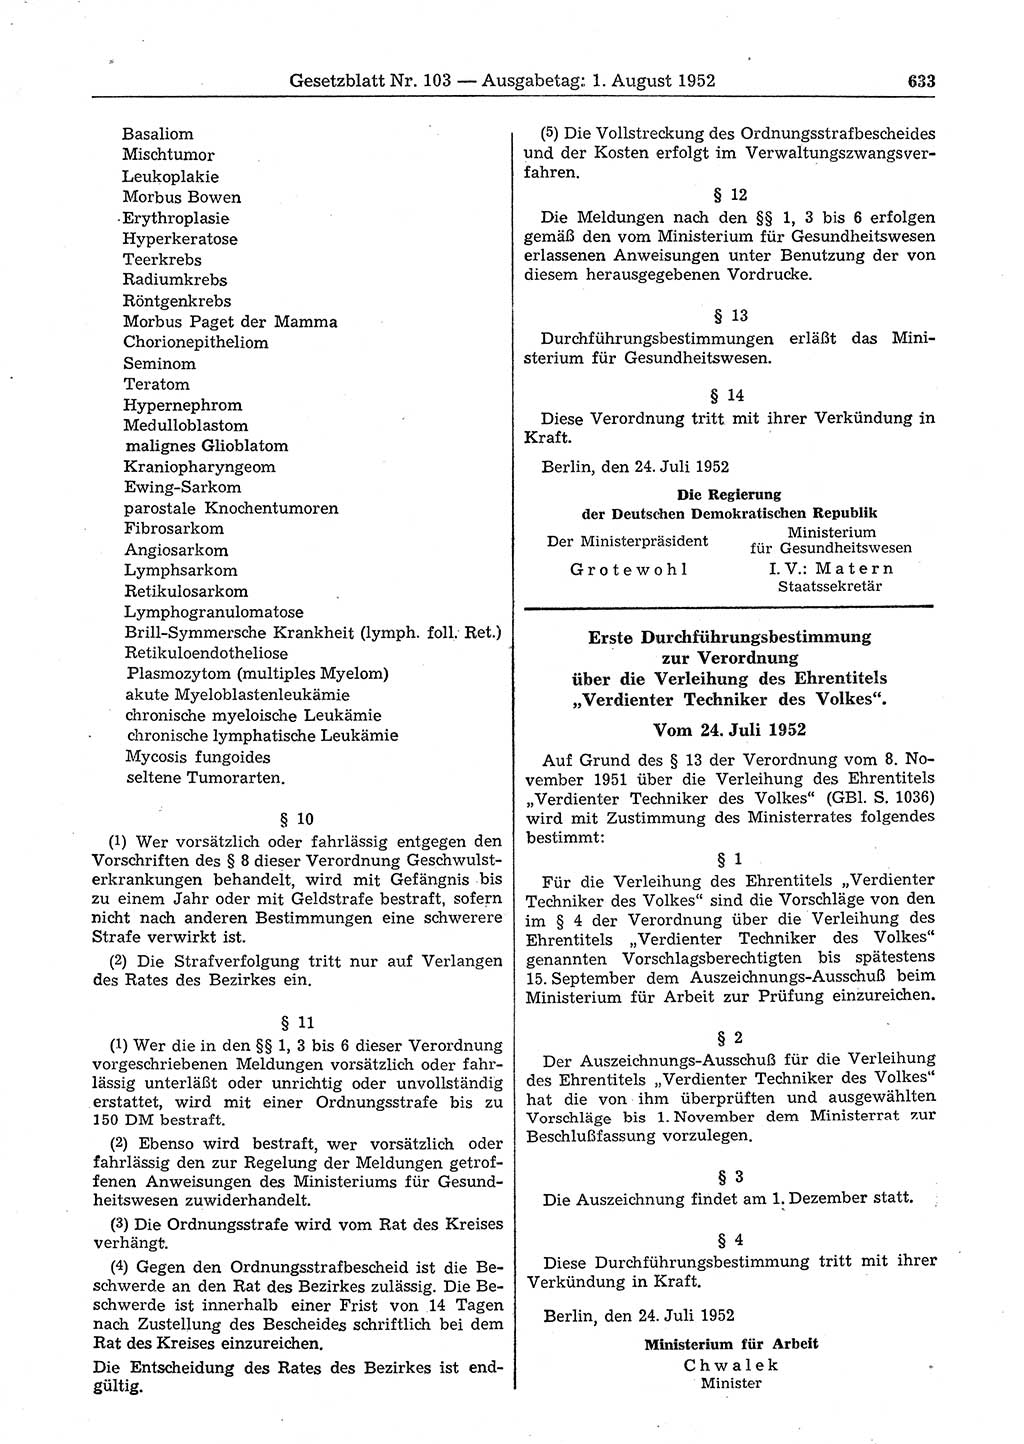 Gesetzblatt (GBl.) der Deutschen Demokratischen Republik (DDR) 1952, Seite 633 (GBl. DDR 1952, S. 633)